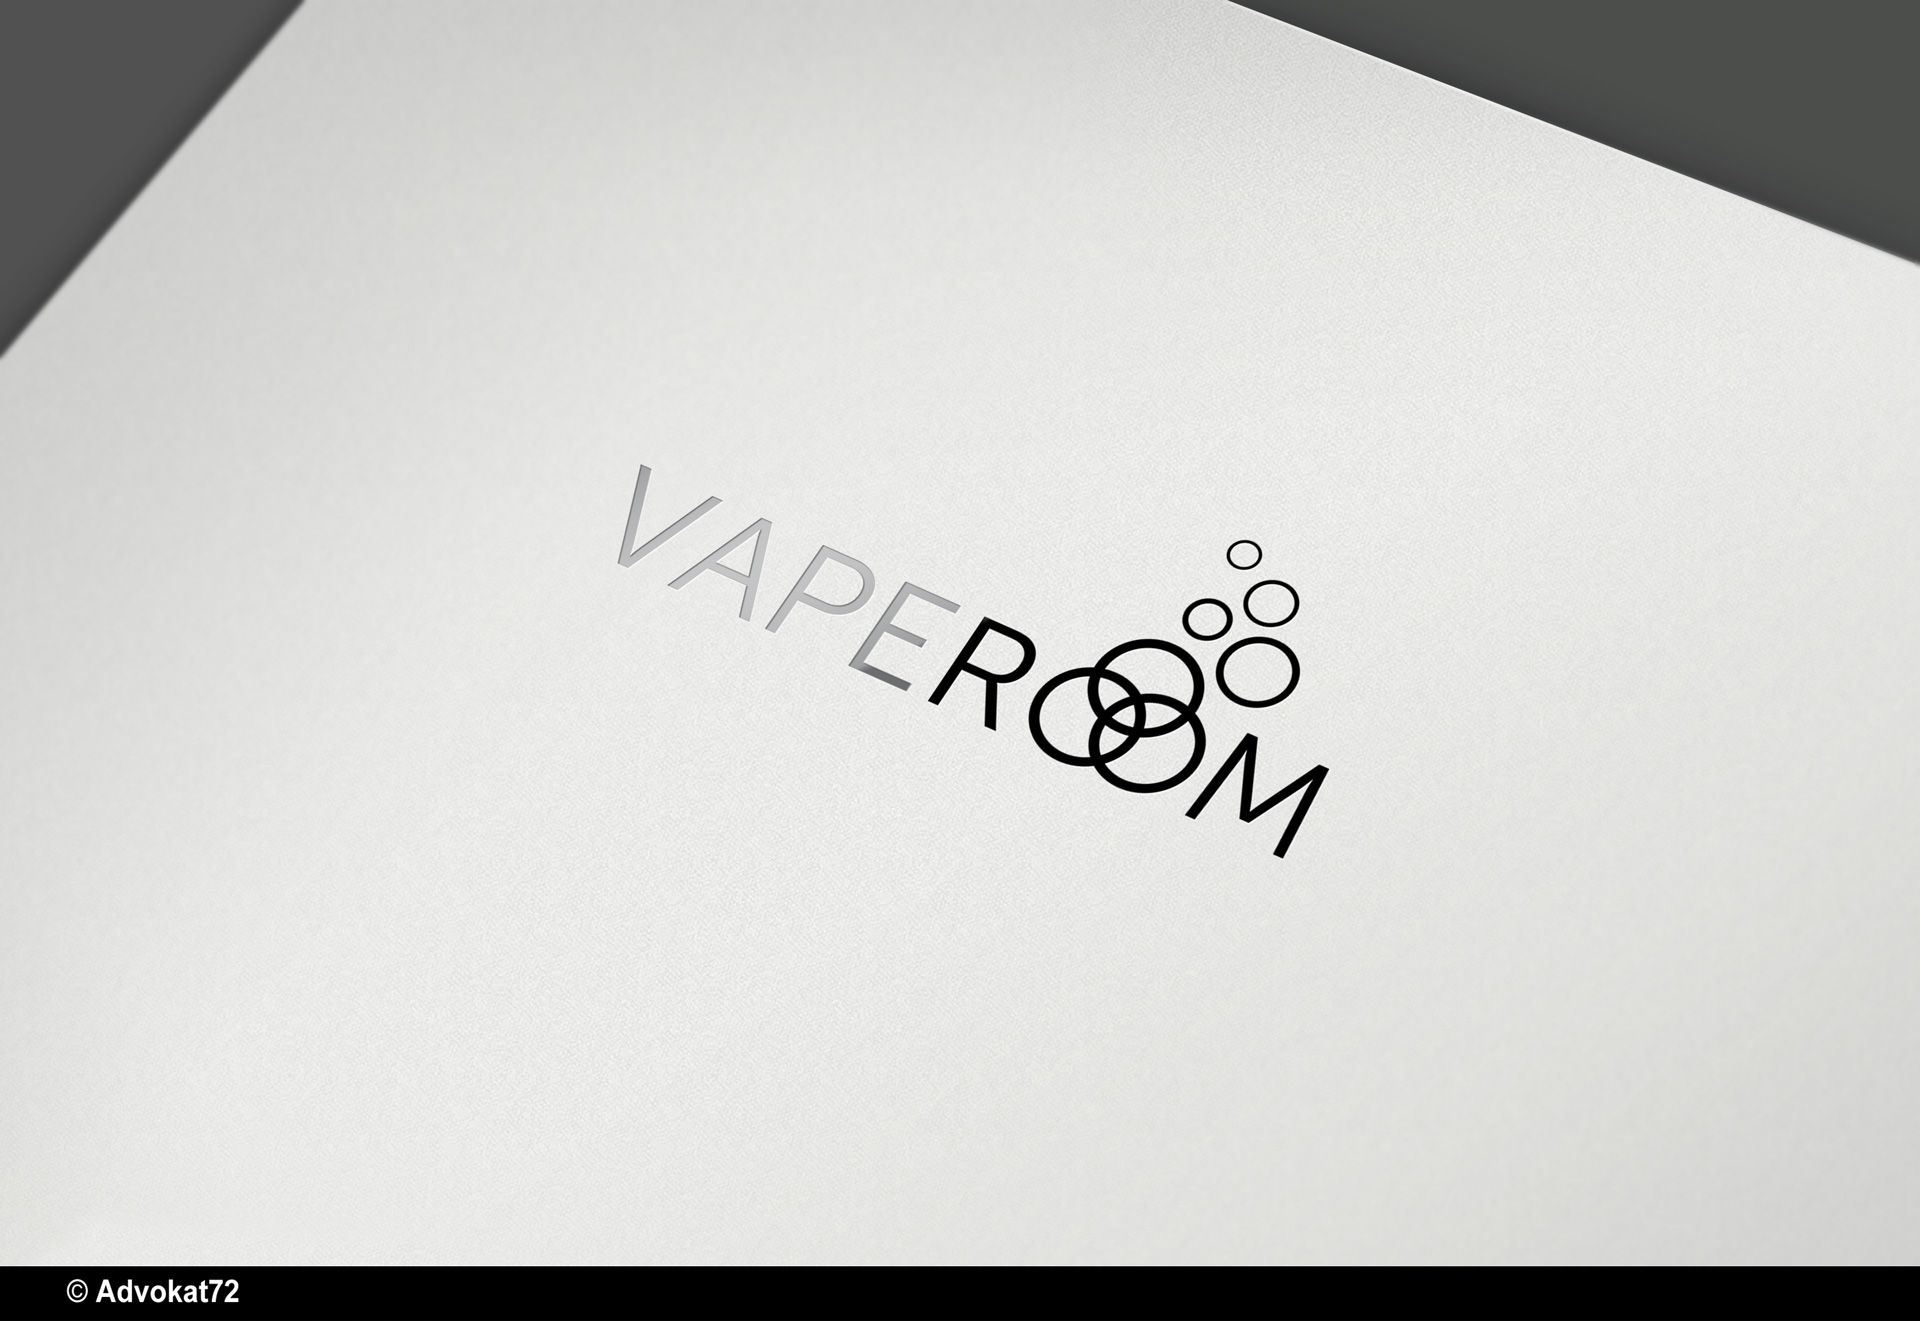 Логотип для сети магазинов VapeRoom  - дизайнер Advokat72